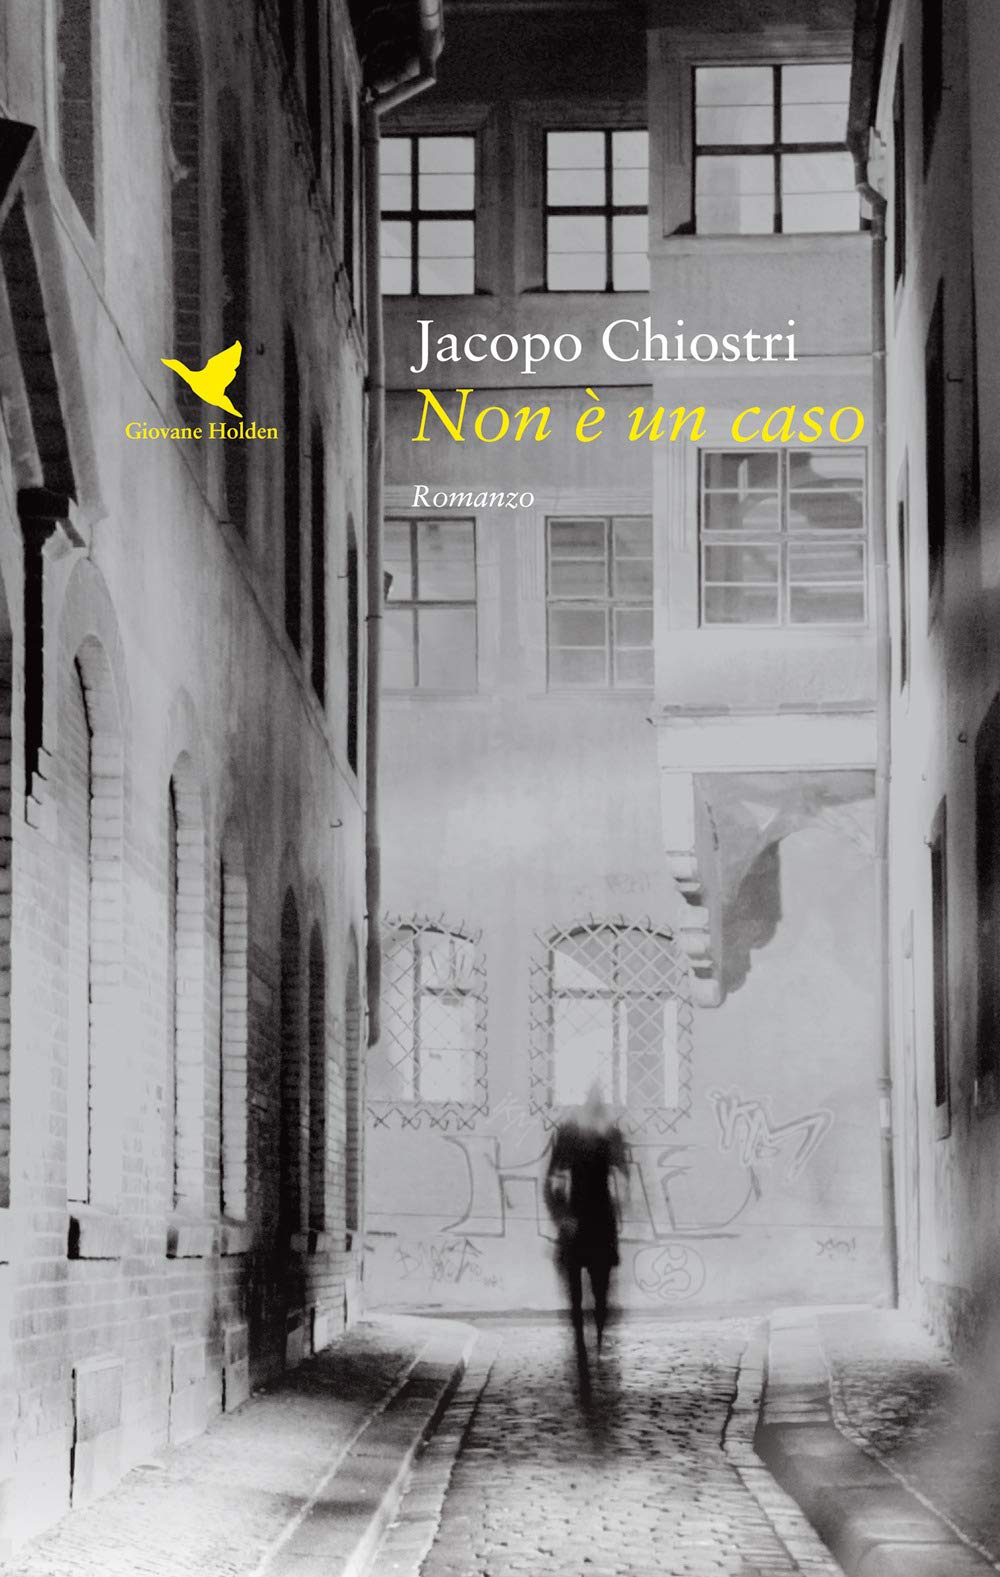 Amazon.it: Non è un caso - Chiostri, Jacopo - Libri